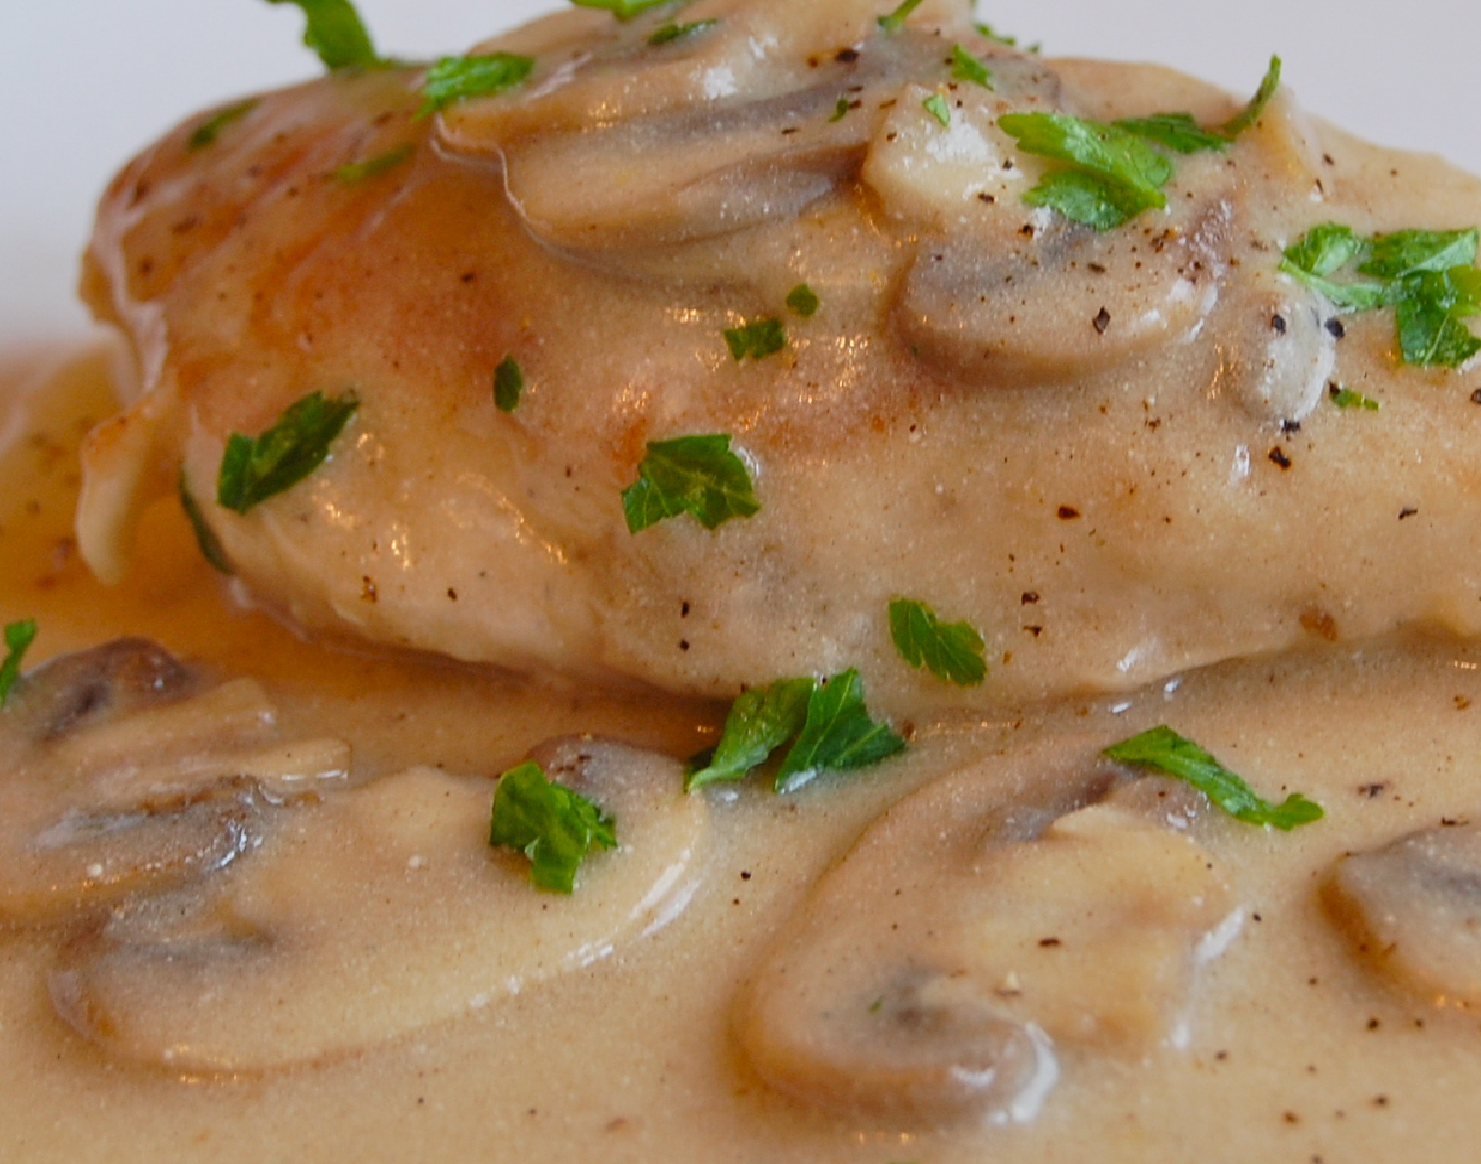 Филе куриное с грибами в сметанном соусе на сковороде рецепт фото пошагово